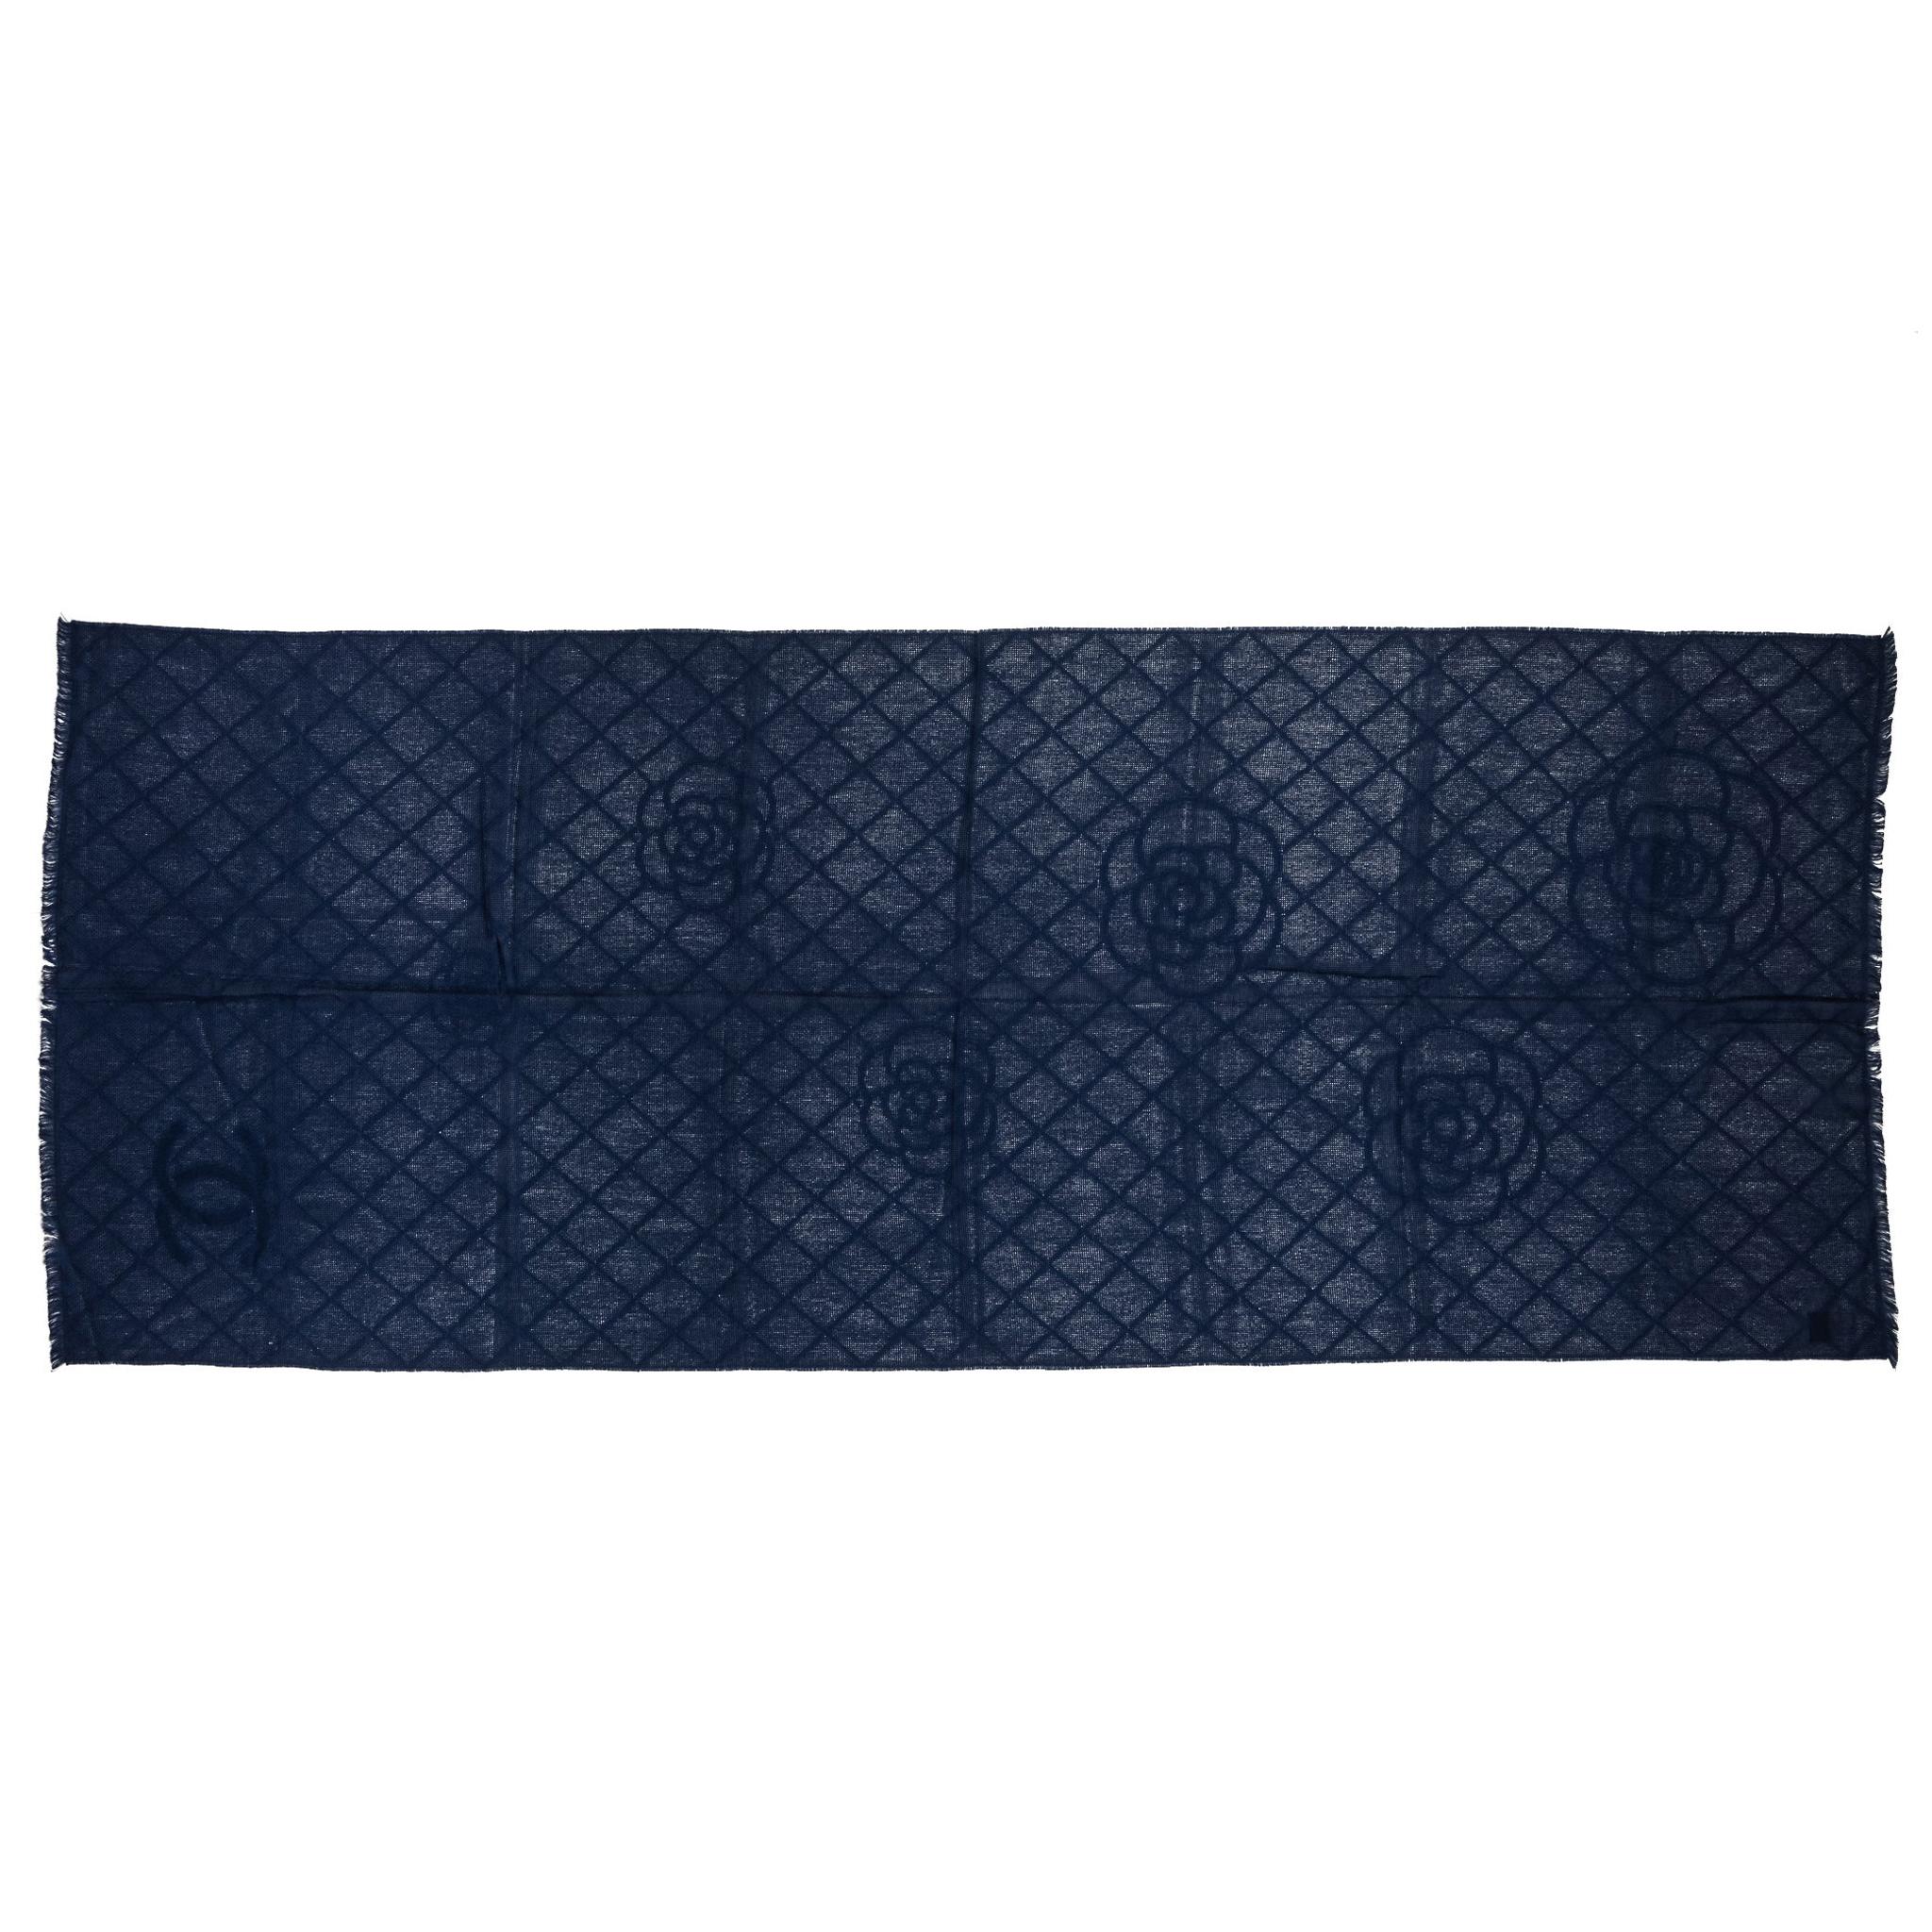 Chanel Marineblauer Kaschmir-Schal mit Kamelienblumenmuster